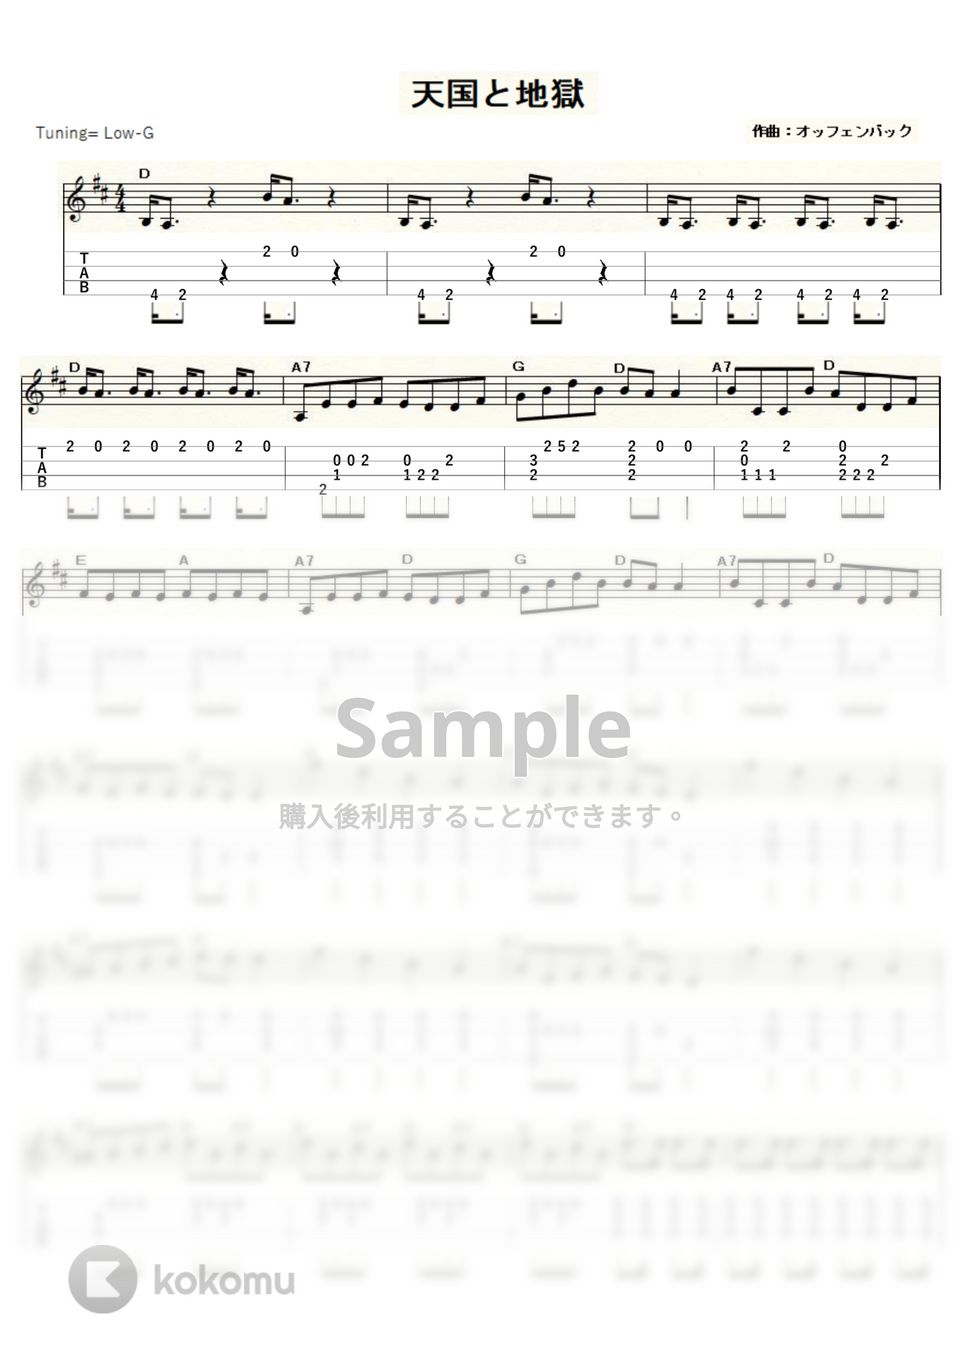 オッフェンバック - 天国と地獄 (ｳｸﾚﾚｿﾛ / Low-G / 中級～上級) by ukulelepapa